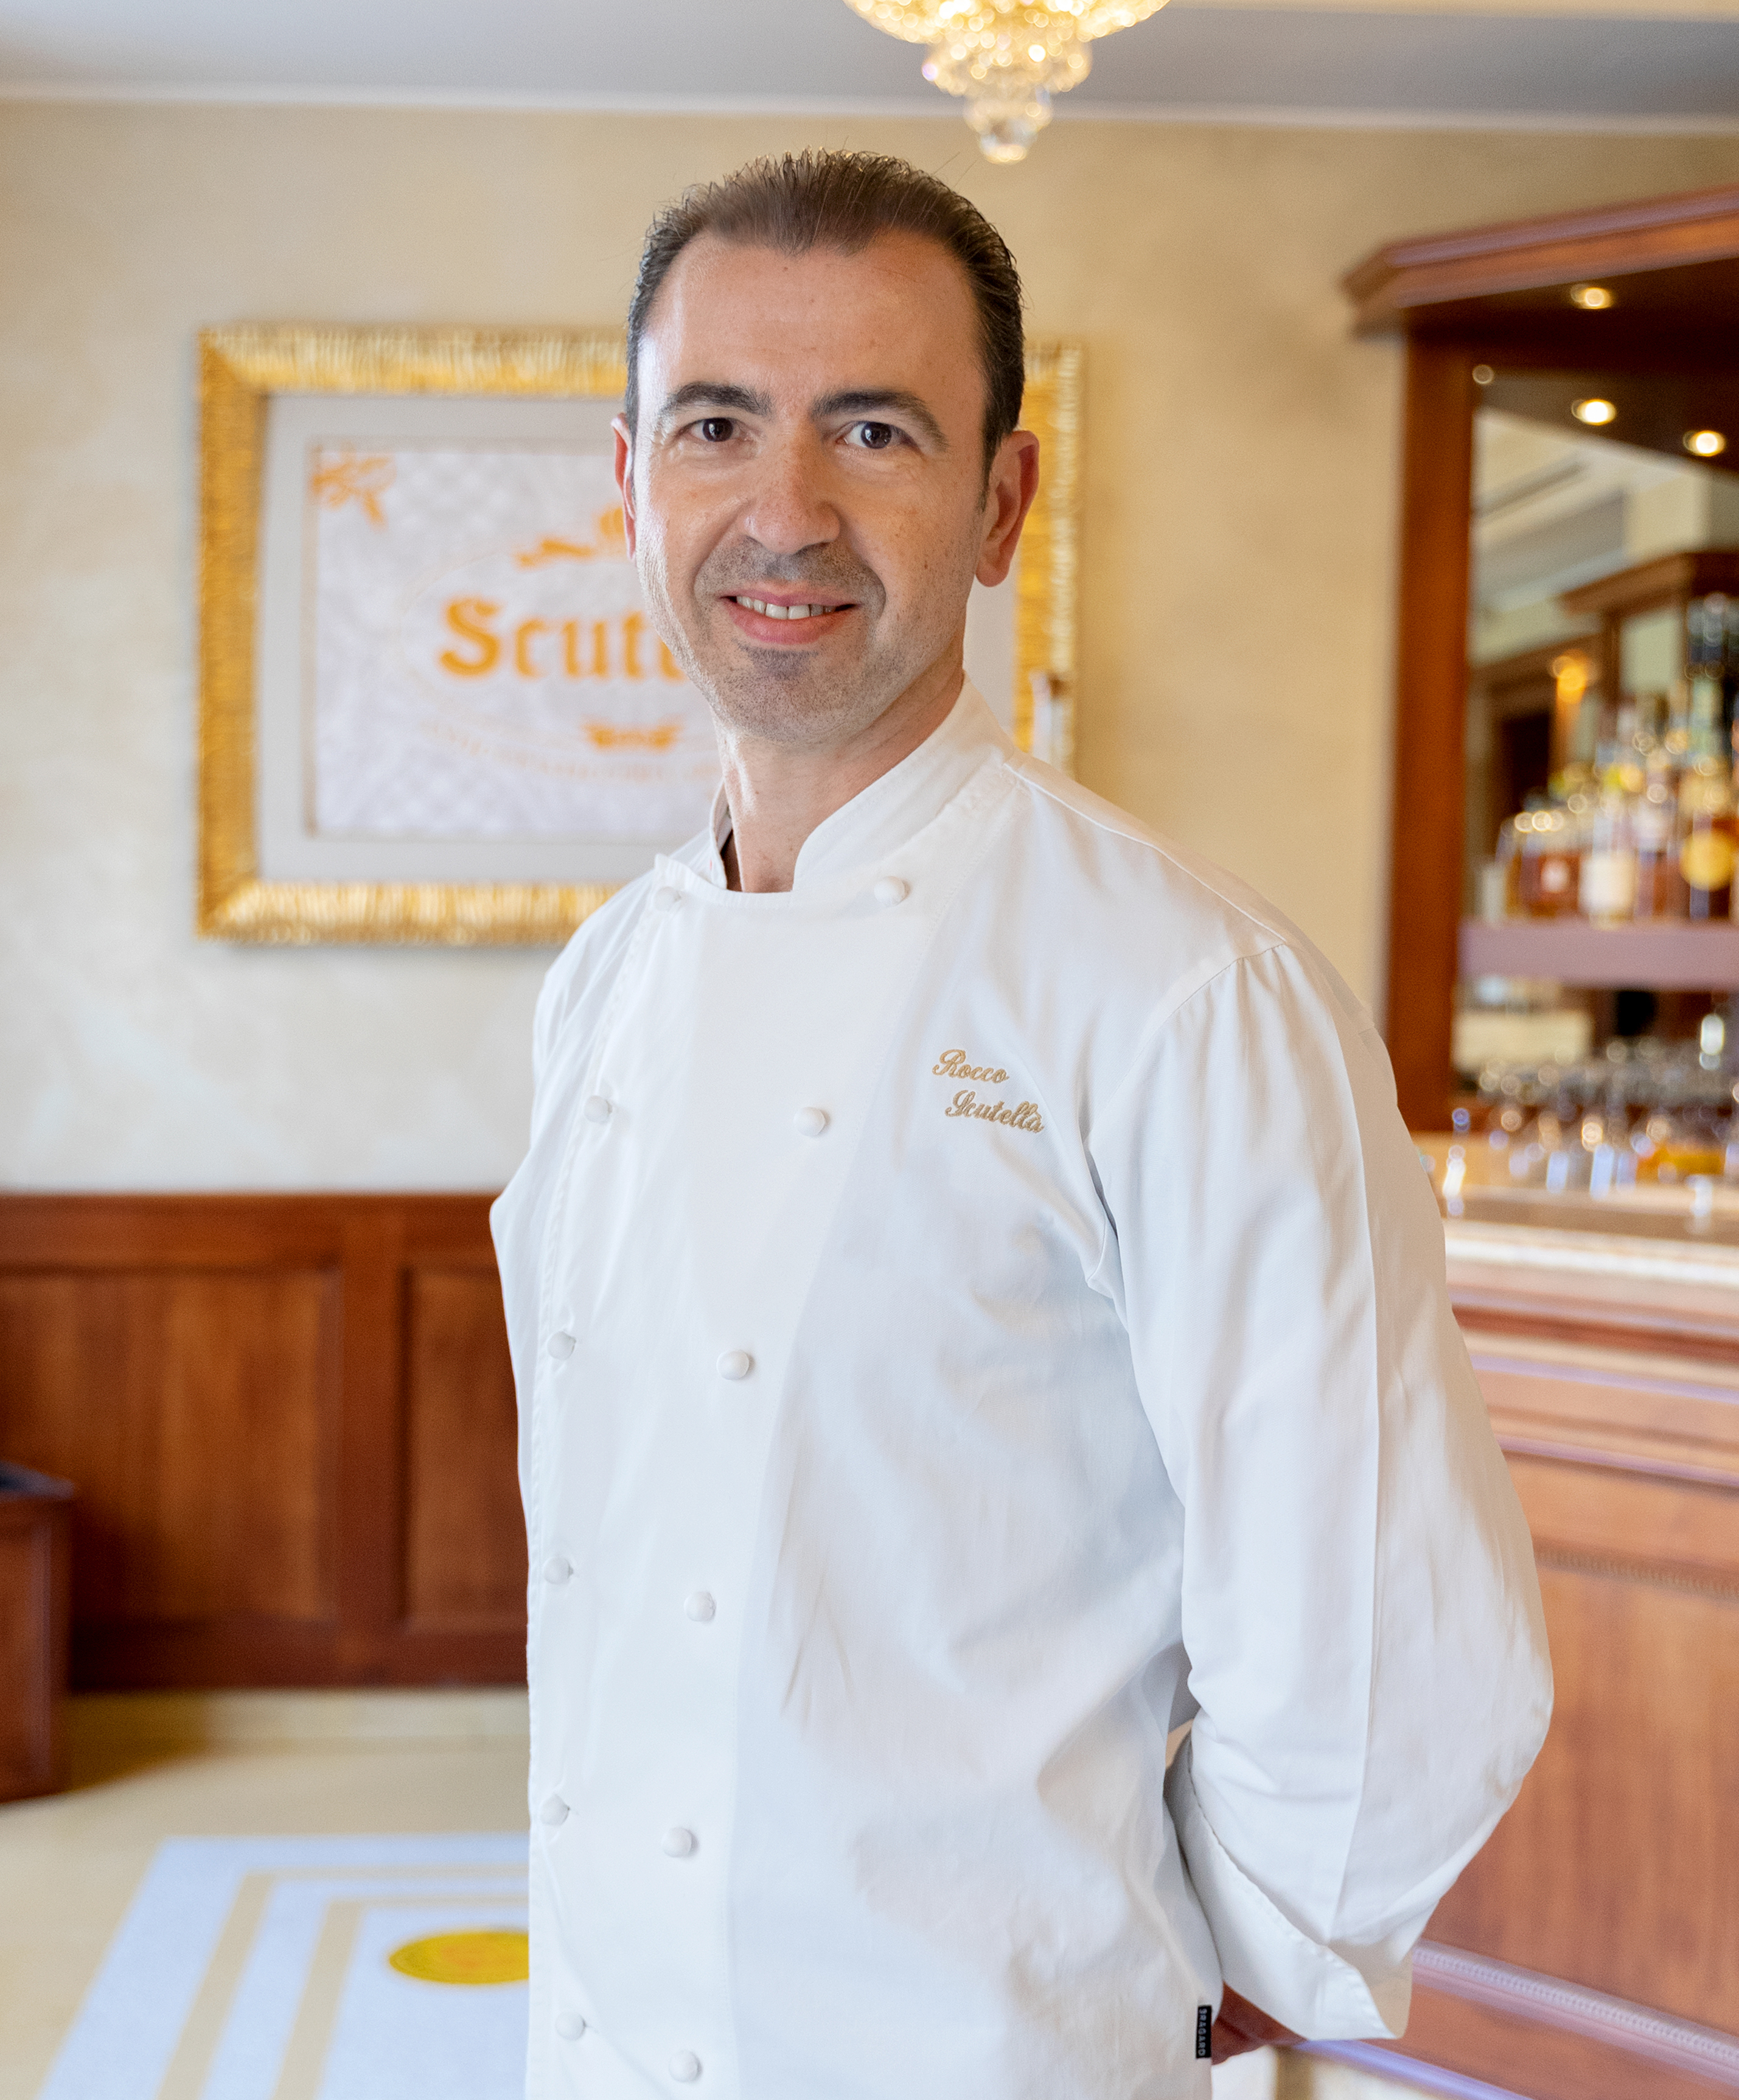 Iginio Massari best pastry chef in Italy for 2020